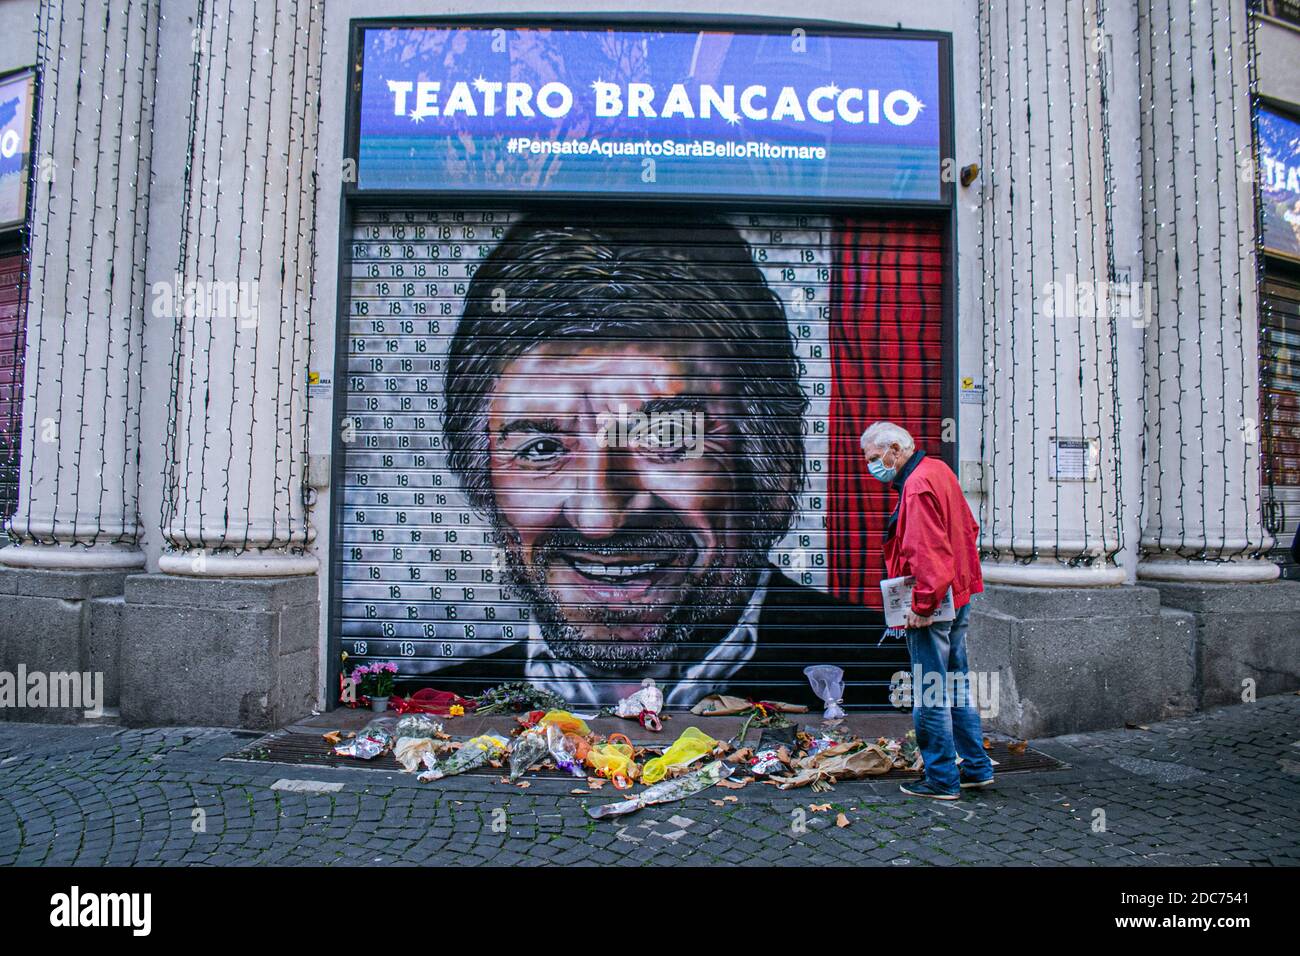 ROME ITALIE 19 novembre 2020. L'image portrait de Luigi Gigi Proietti, mort le 2 novembre, créée par l'artiste de rue Maupal apparaît sur les volets du Théâtre de Brancaccio à Rome où l'acteur et comédien italien a été directeur artistique de 2001 à 2007. Credit: amer ghazzal / Alamy Live News Banque D'Images